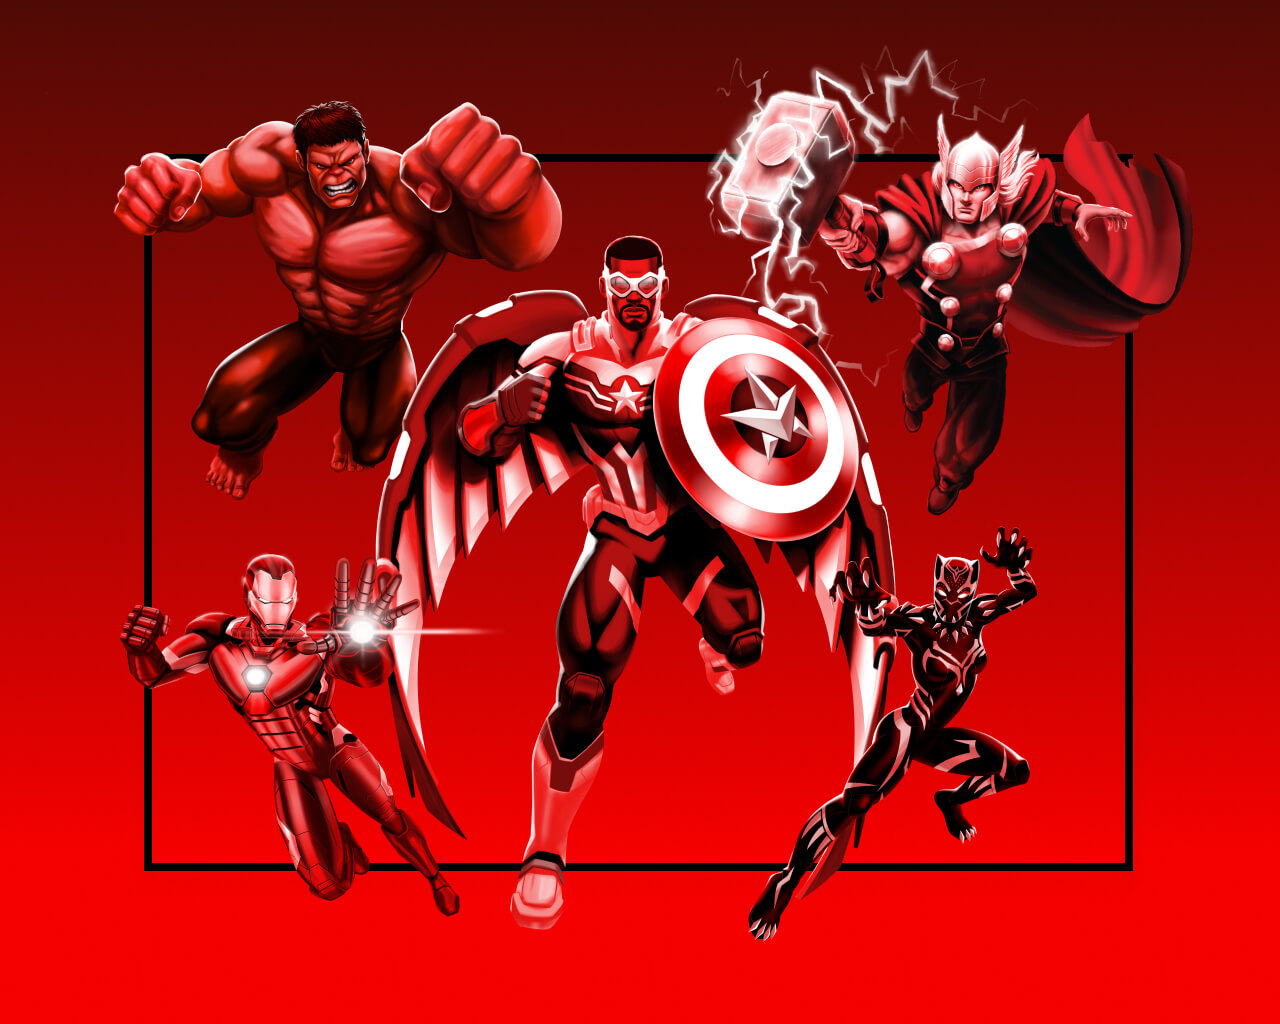 El capitán América al centro, a su derecha se encuentran Hulk y Iron-Man listos para atacar. Y a su izquierda Thor y Black Panther sobre um fondo rojo.